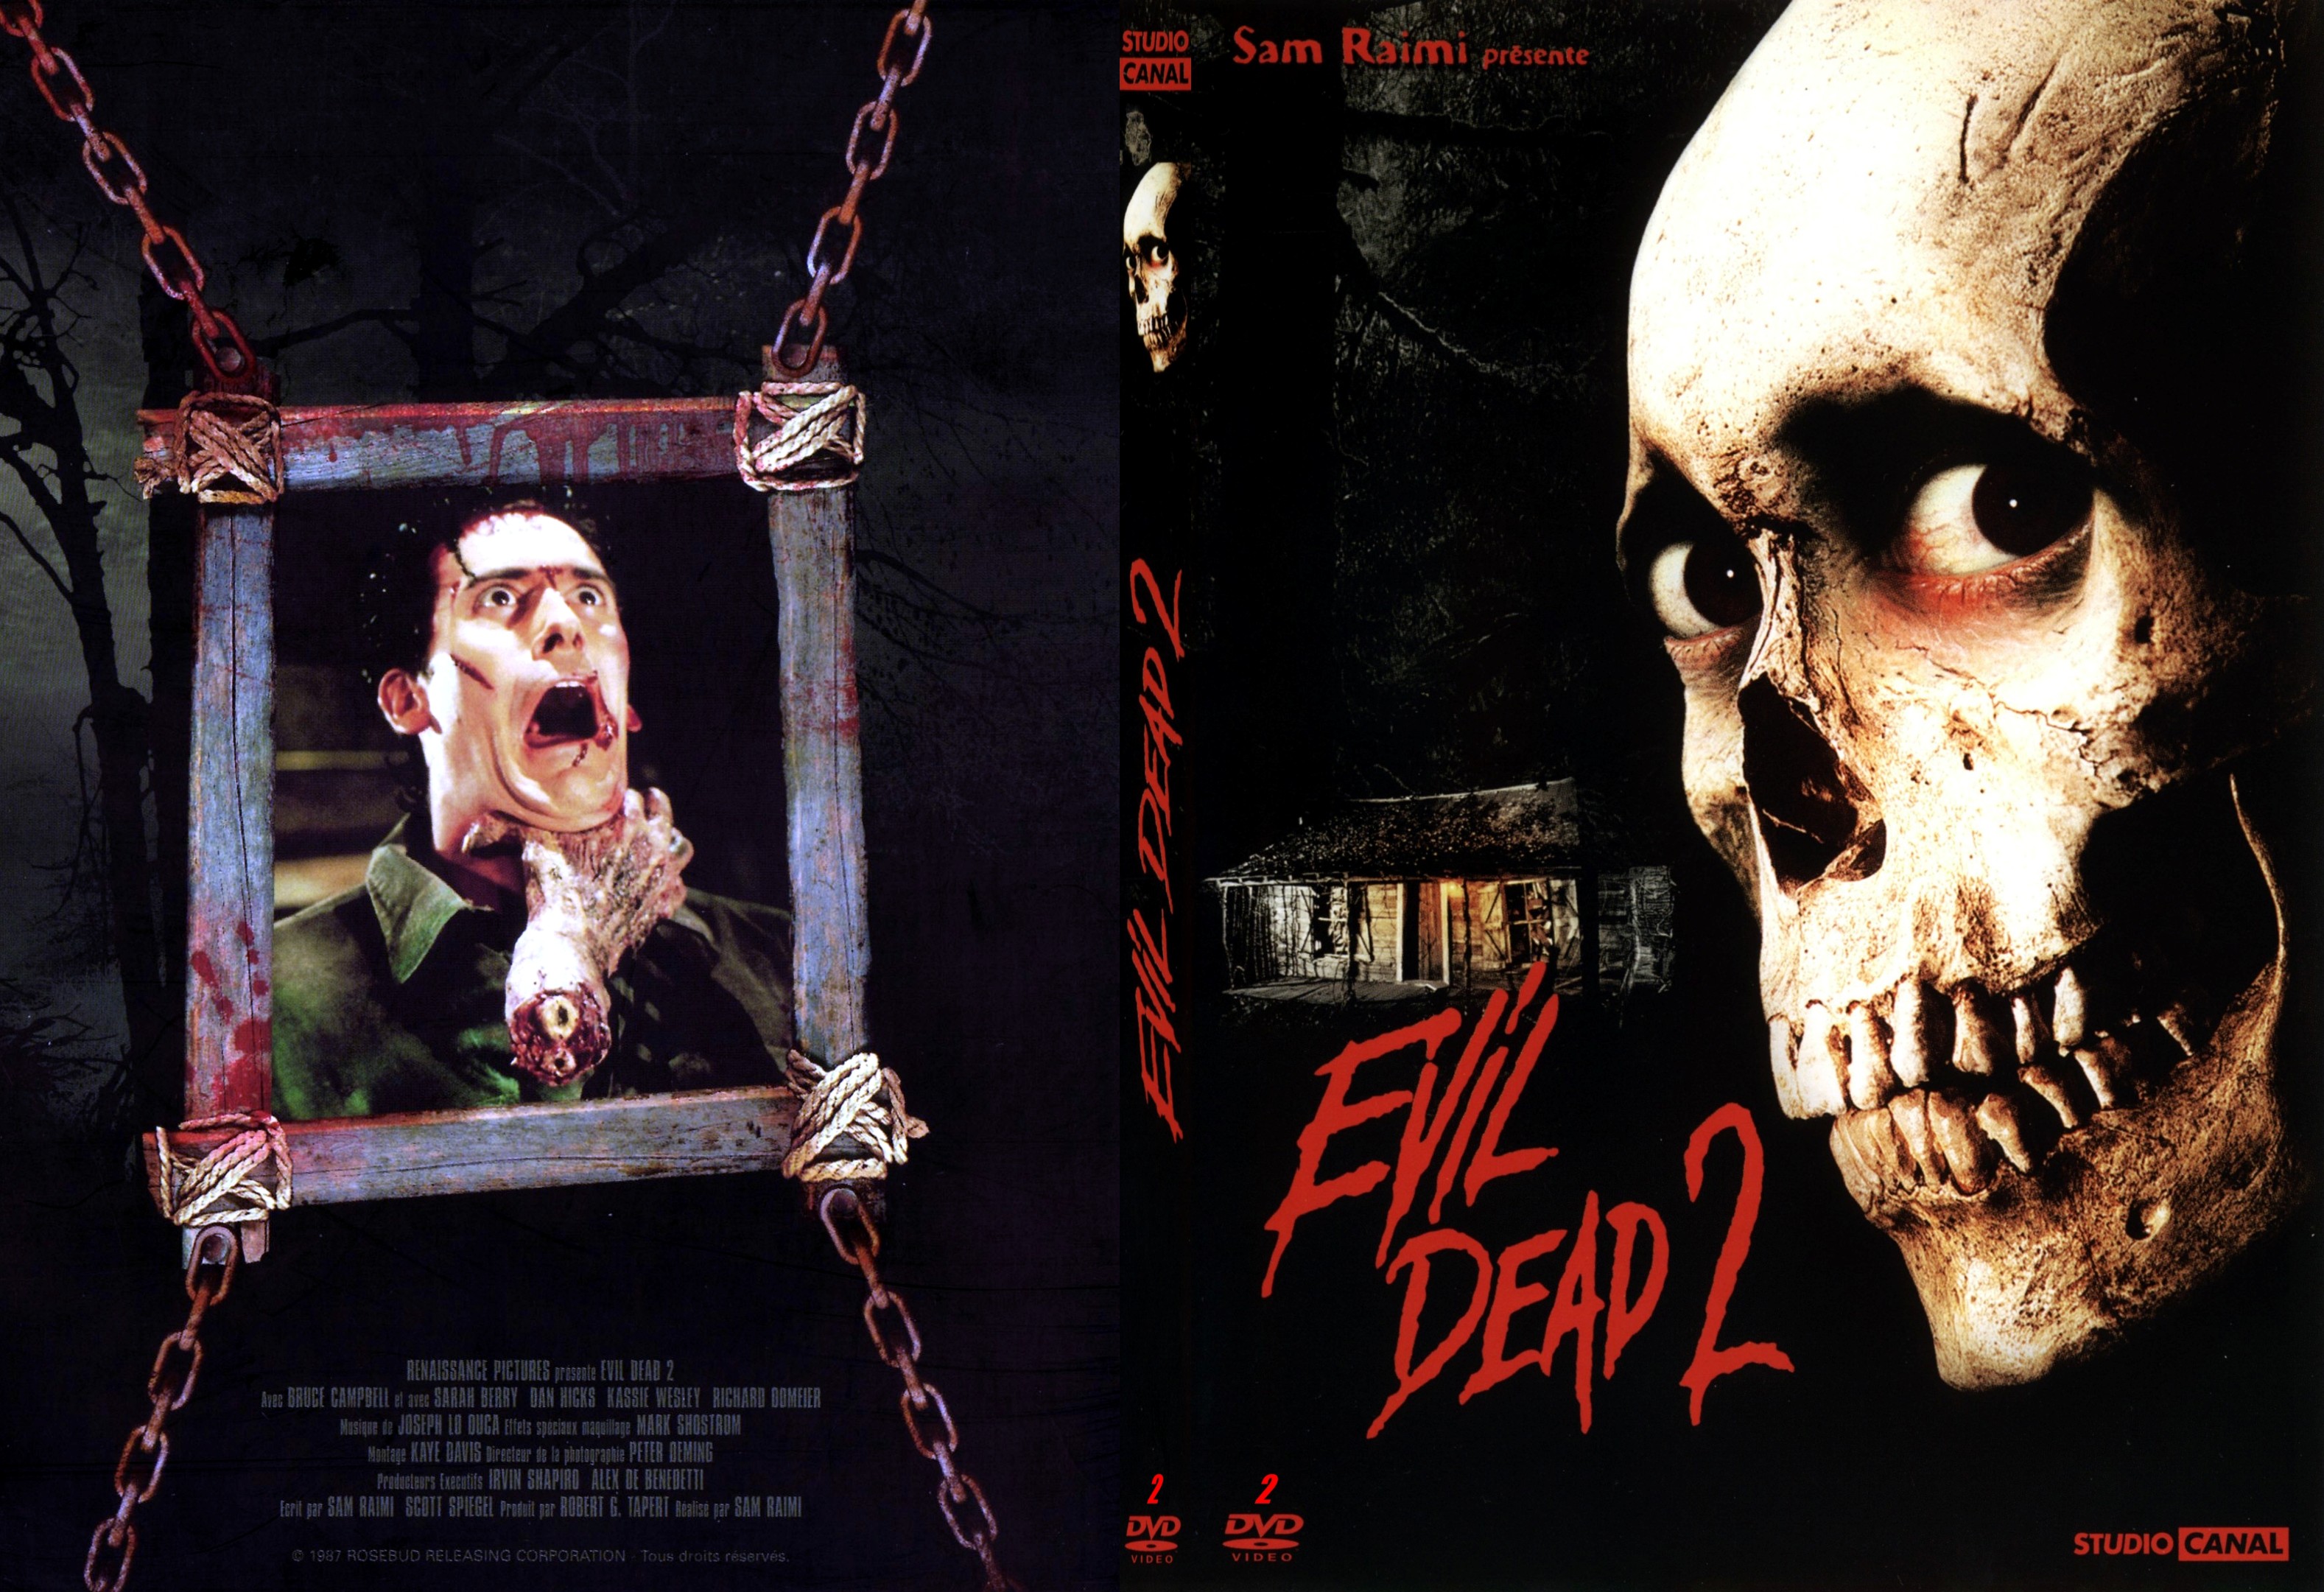 Jaquette DVD Evil dead 2 - SLIM v2